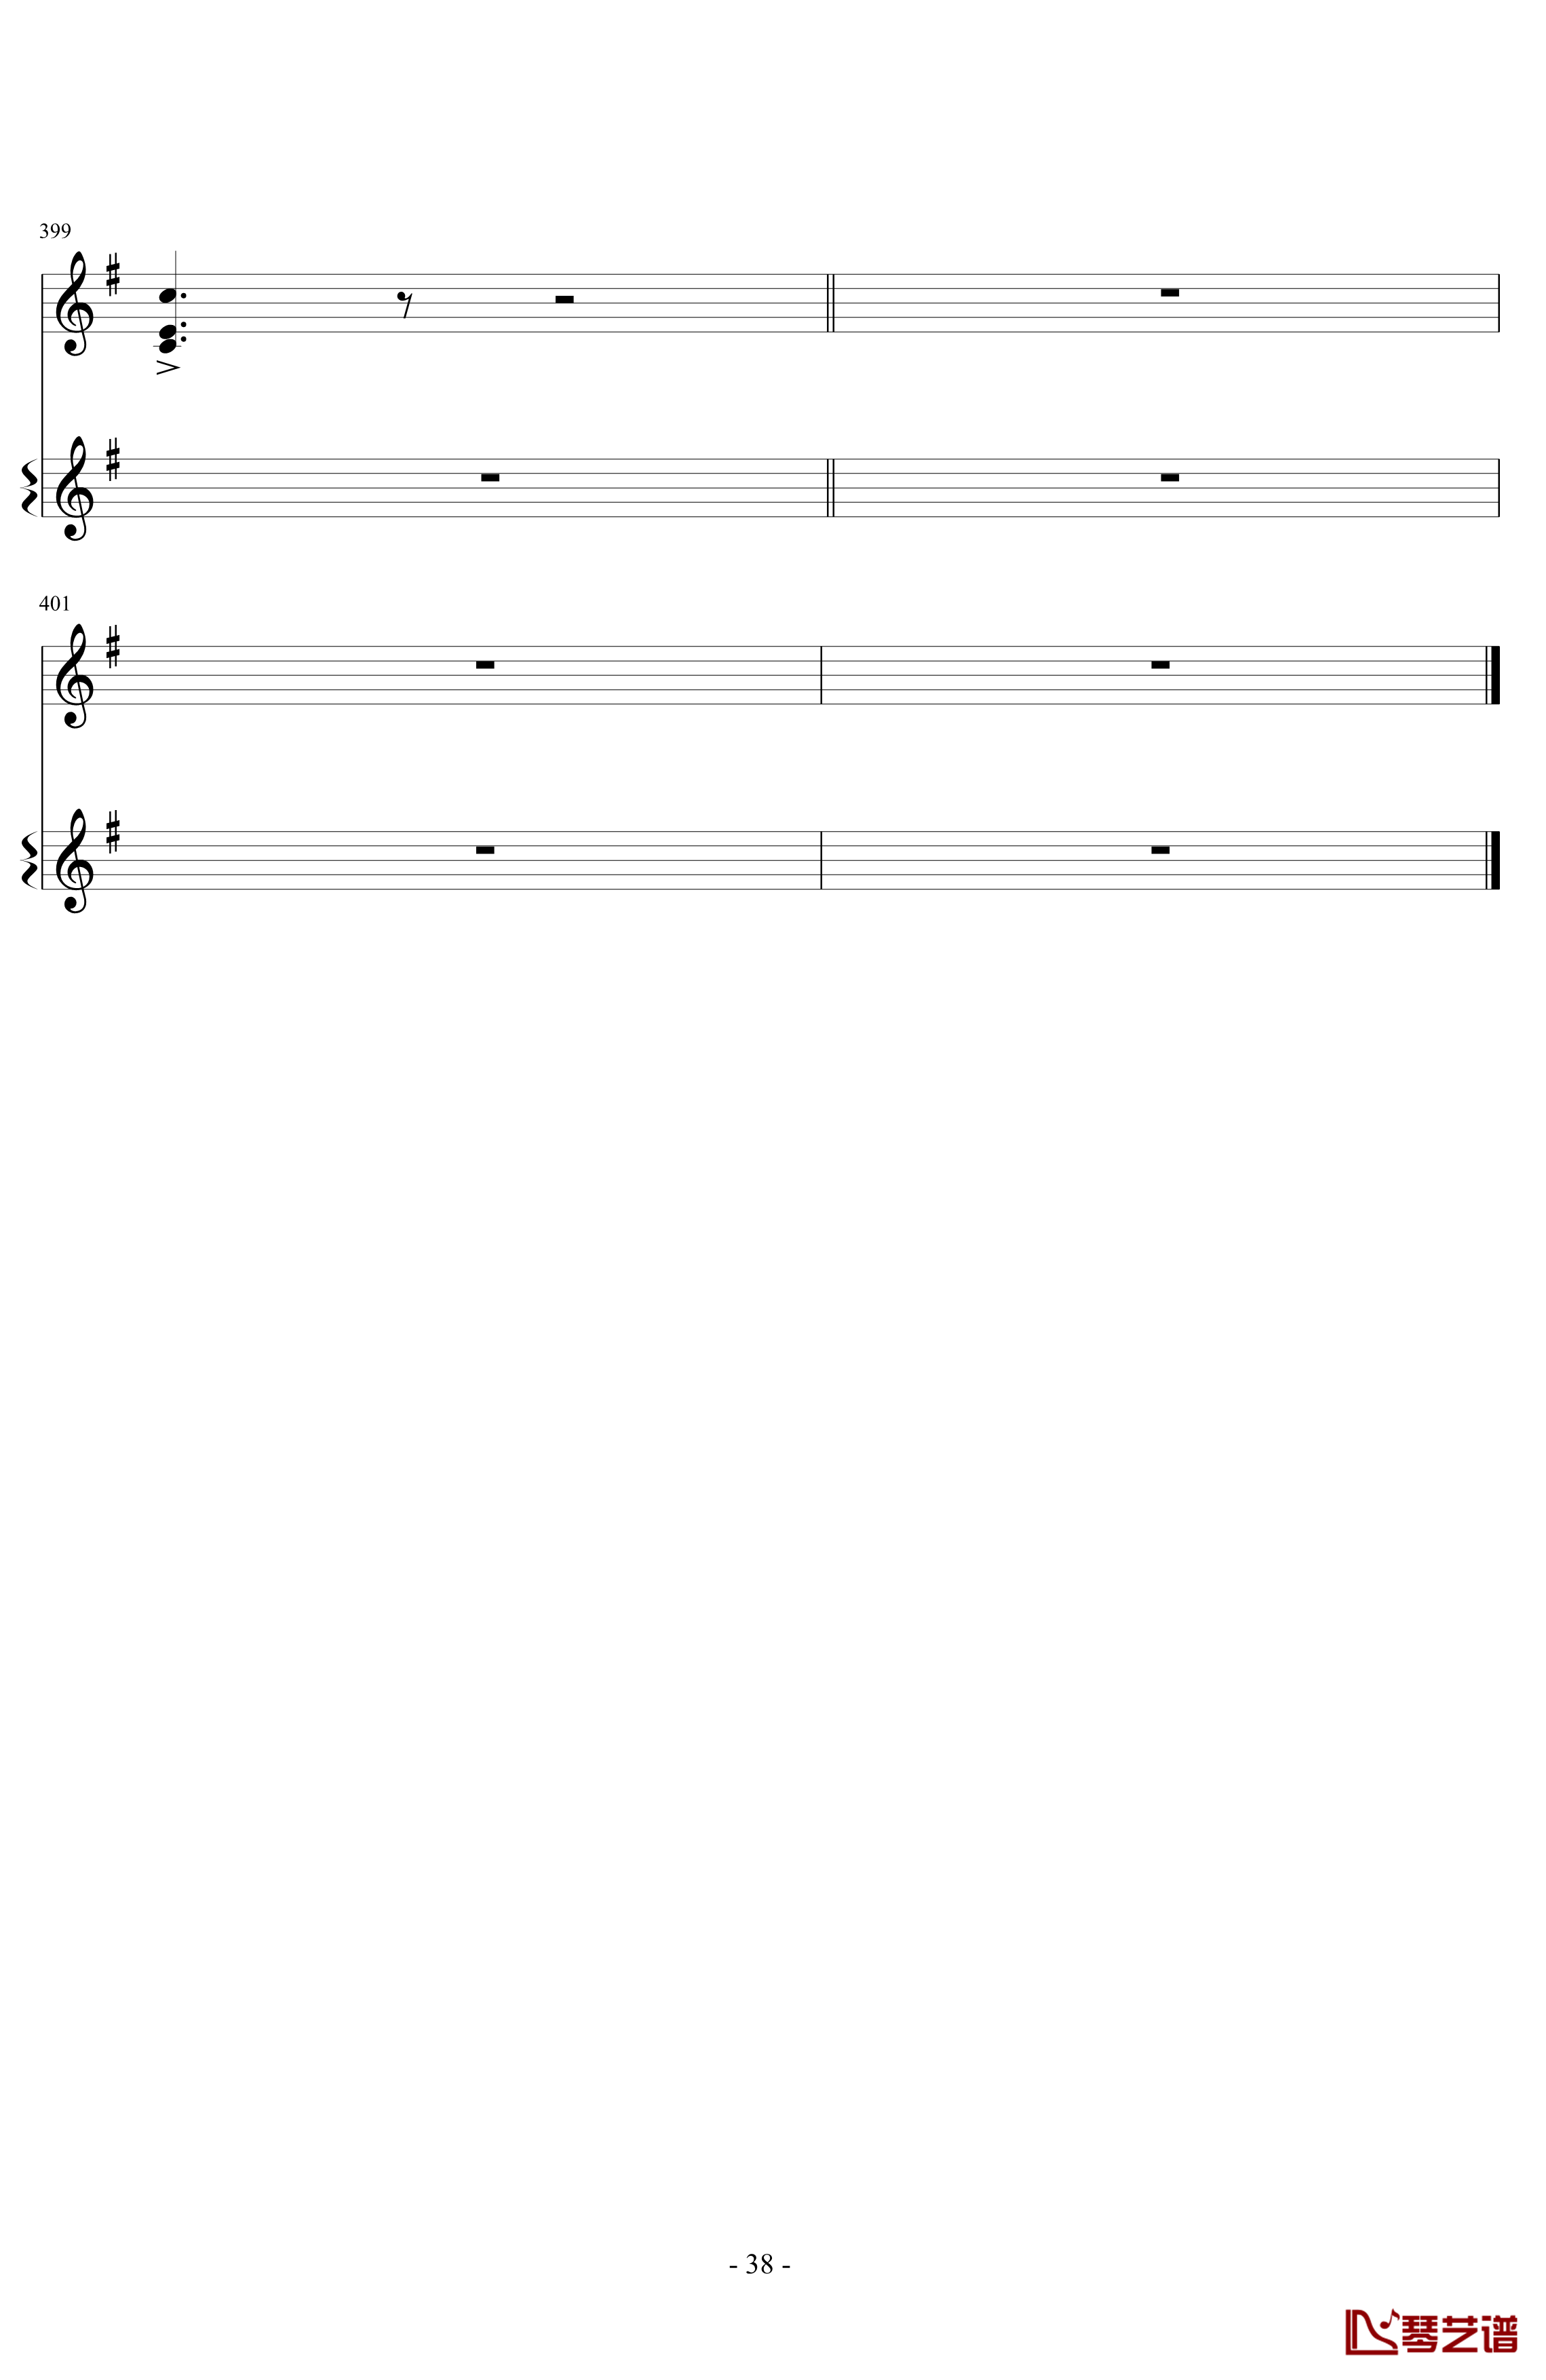 意大利国歌变奏曲钢琴谱-DXF38